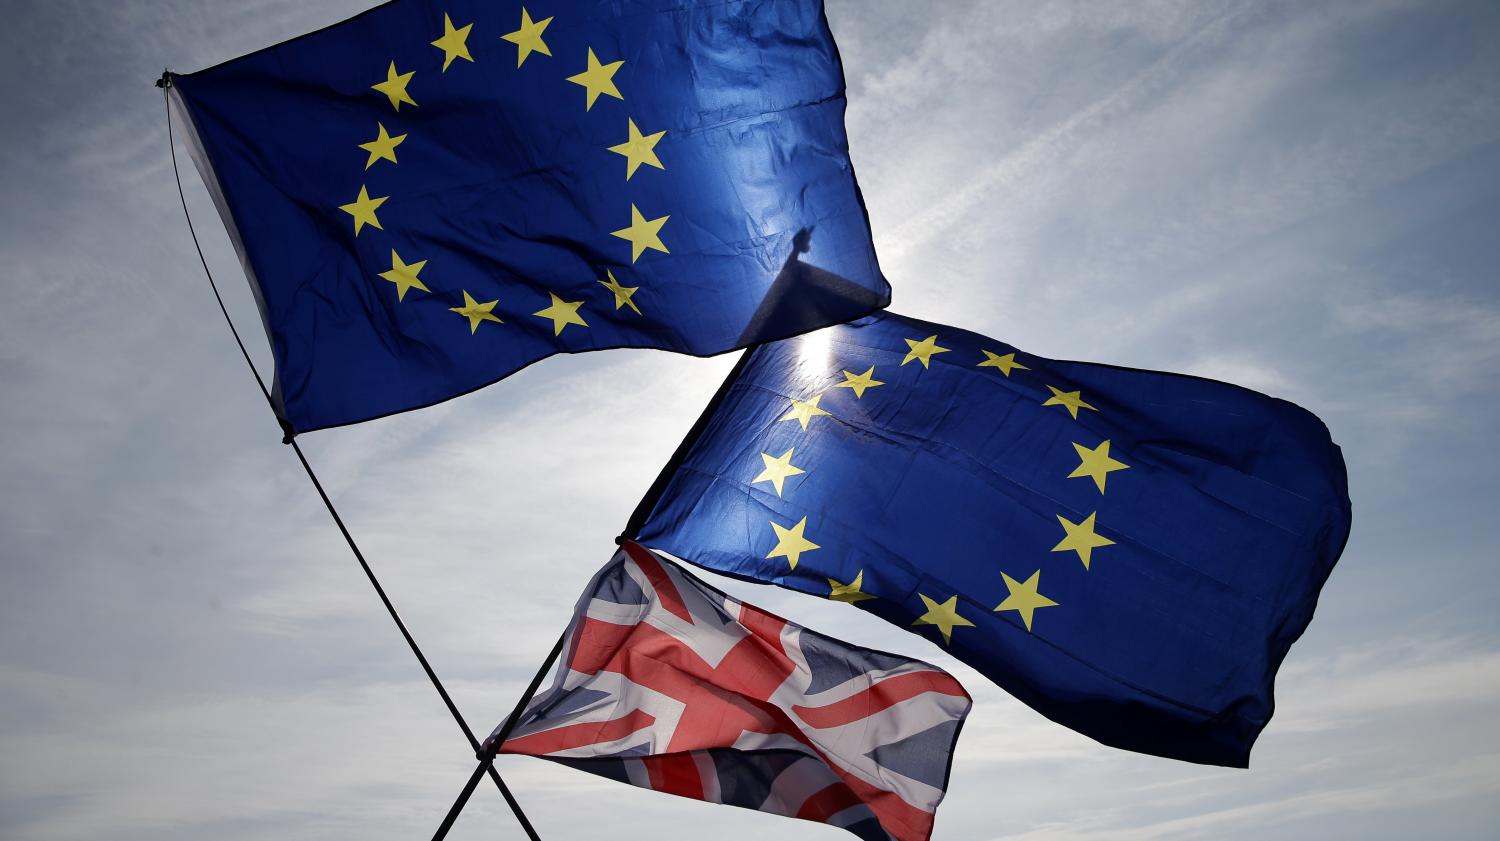 Le Royaume-Uni peut décider seul de renoncer au Brexit, selon la Cour de justice de l'Union européenne